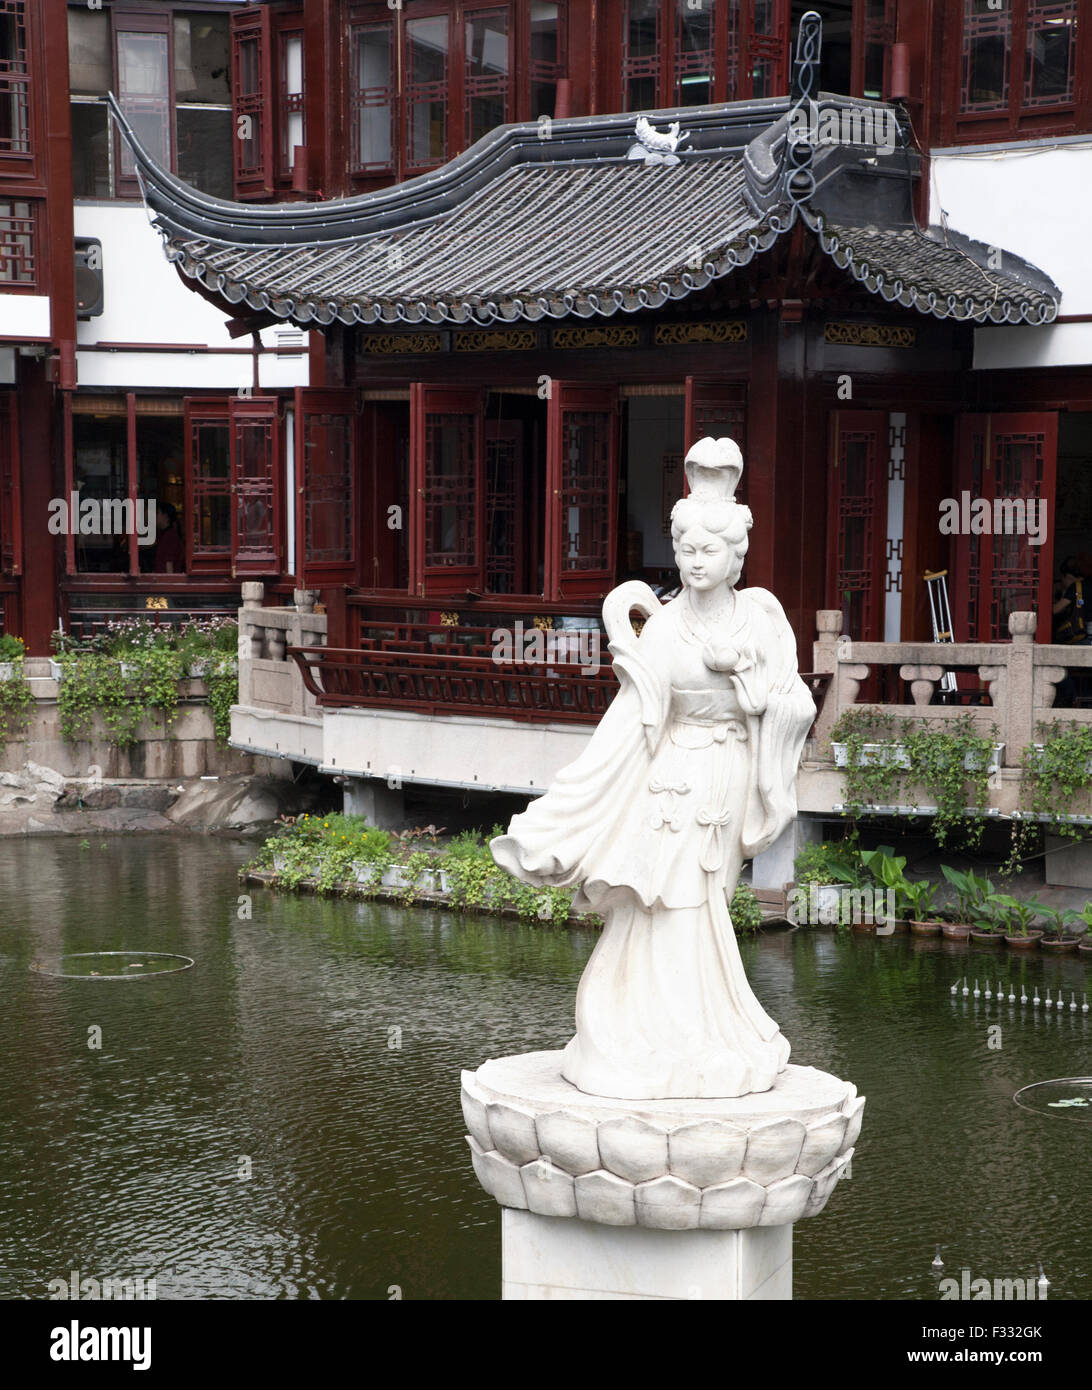 Maison de thé Huxinting et statue dans un étang à l'entrée du jardin Yuyuan dans la vieille ville de Shanghai, province de Shanghai, Chine Banque D'Images